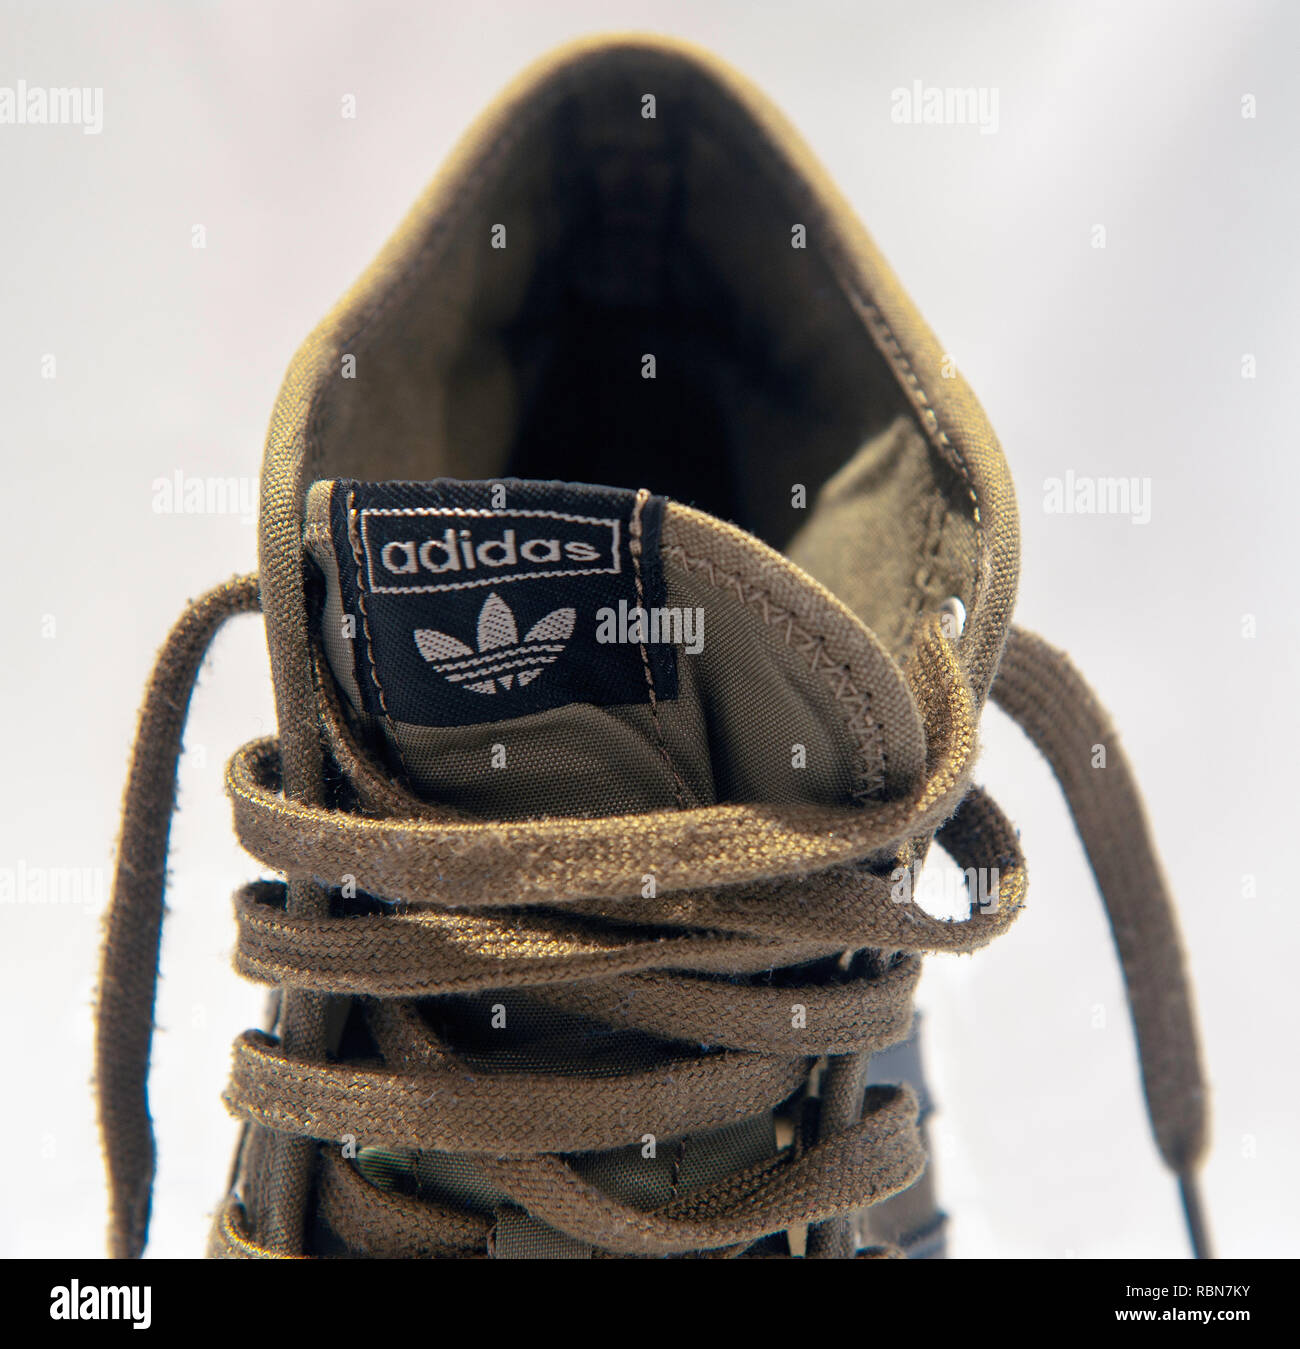 Lengüeta y encajes de un arranque de Adidas Foto de stock